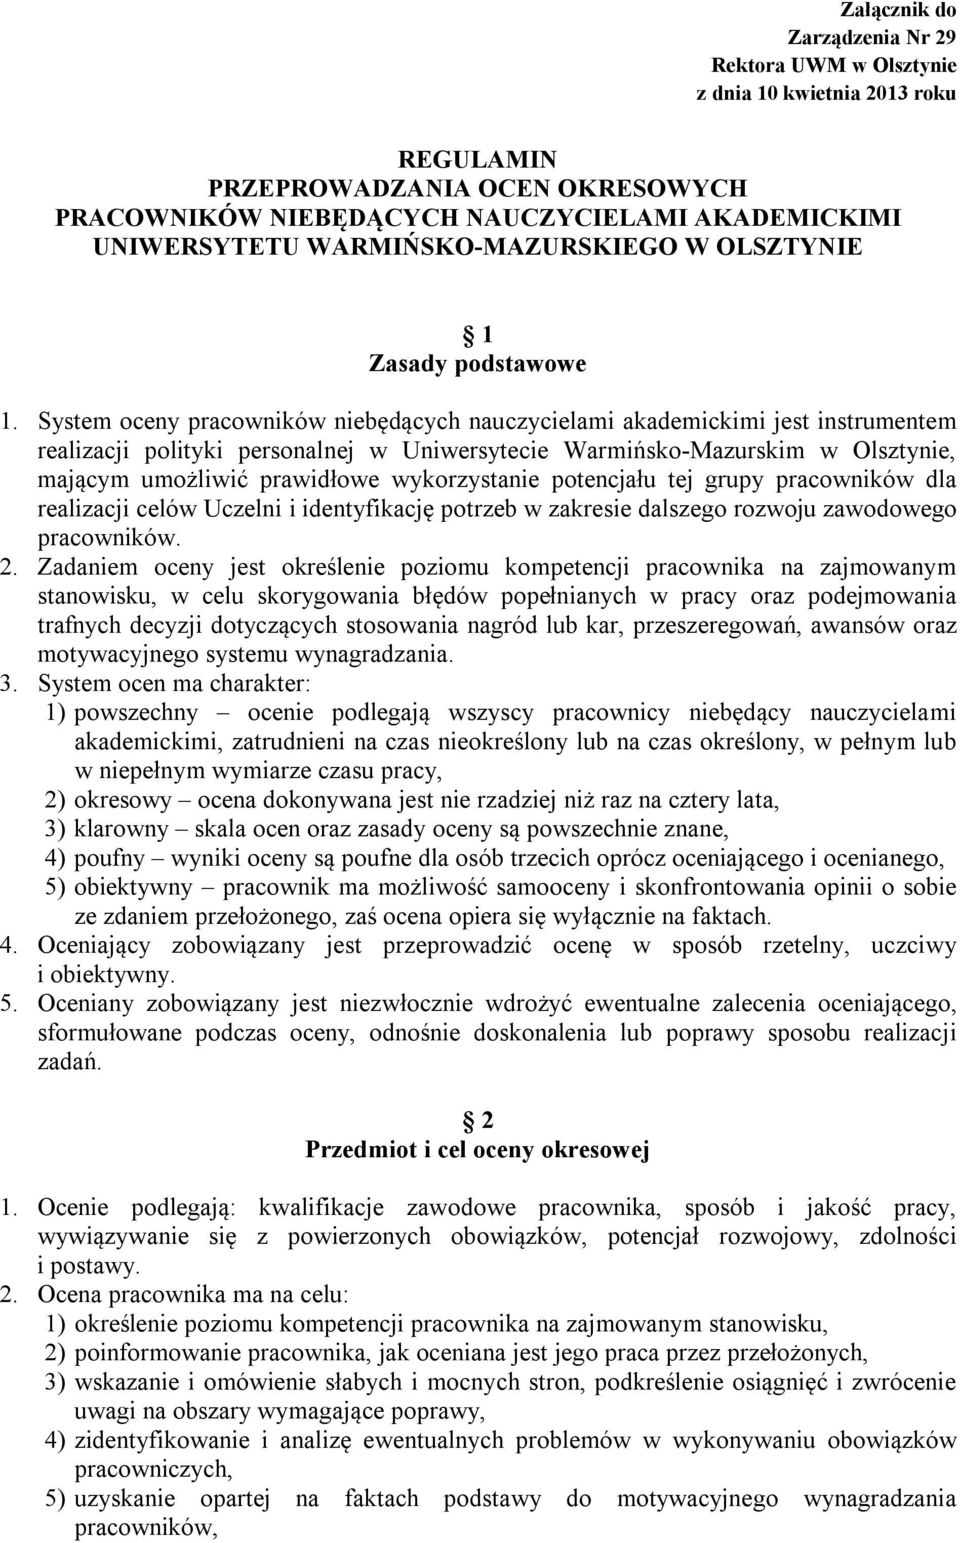 System oceny pracowników niebędących nauczycielami akademickimi jest instrumentem realizacji polityki personalnej w Uniwersytecie Warmińsko-Mazurskim w Olsztynie, mającym umożliwić prawidłowe